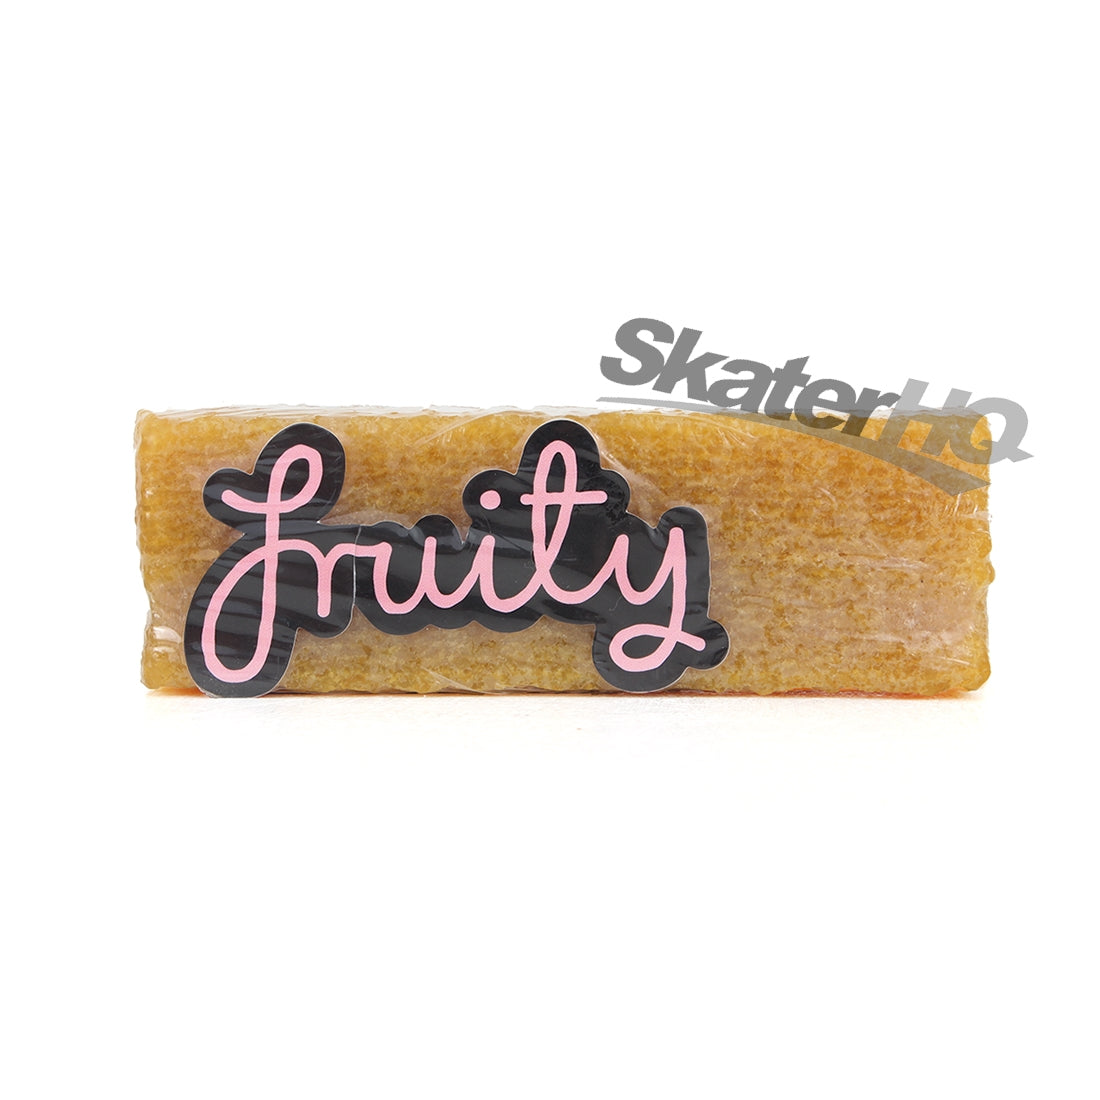 Fruity Eraser Grip Cleaner Skateboard Accessories